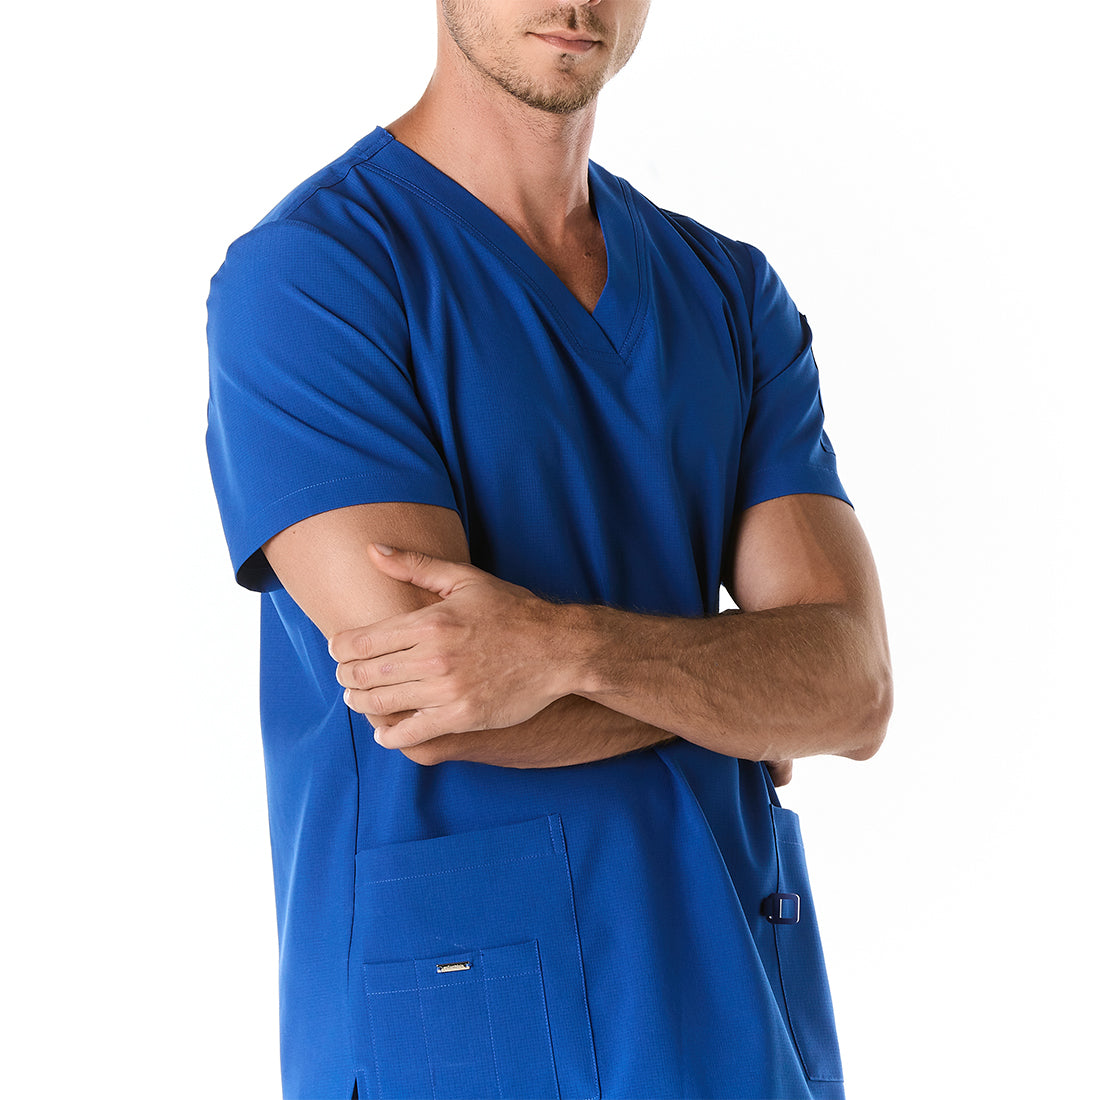 Hombre vistiendo pijama sanitario color azul rey con cuello en v y hebilla porta gafete